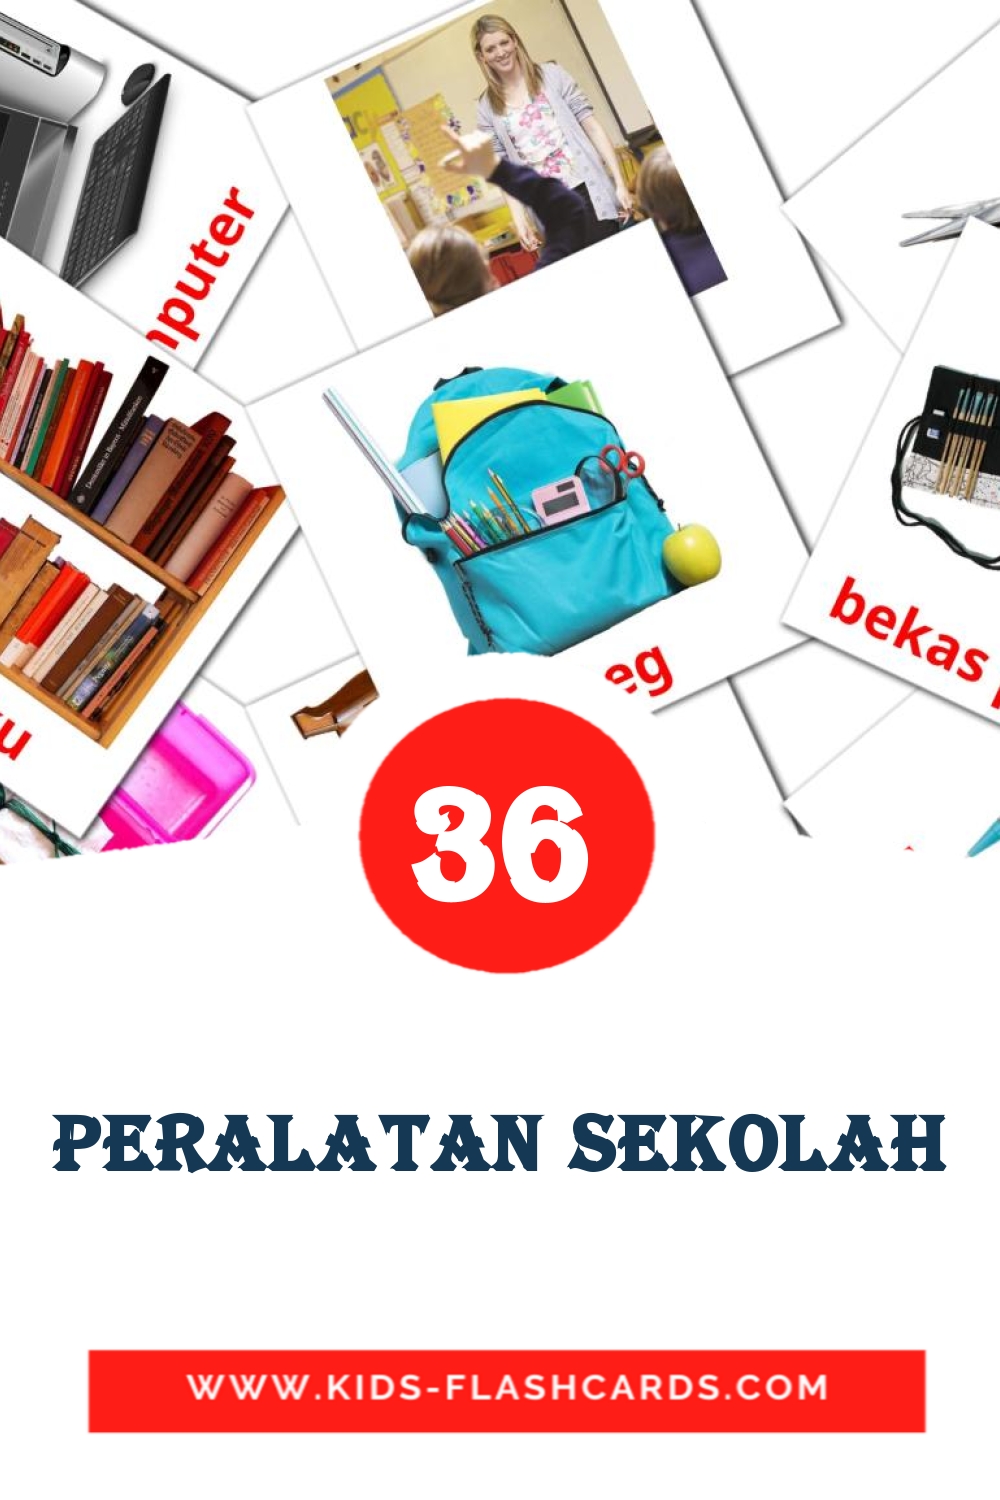 Peralatan Sekolah на малайском для Детского Сада (36 карточек)